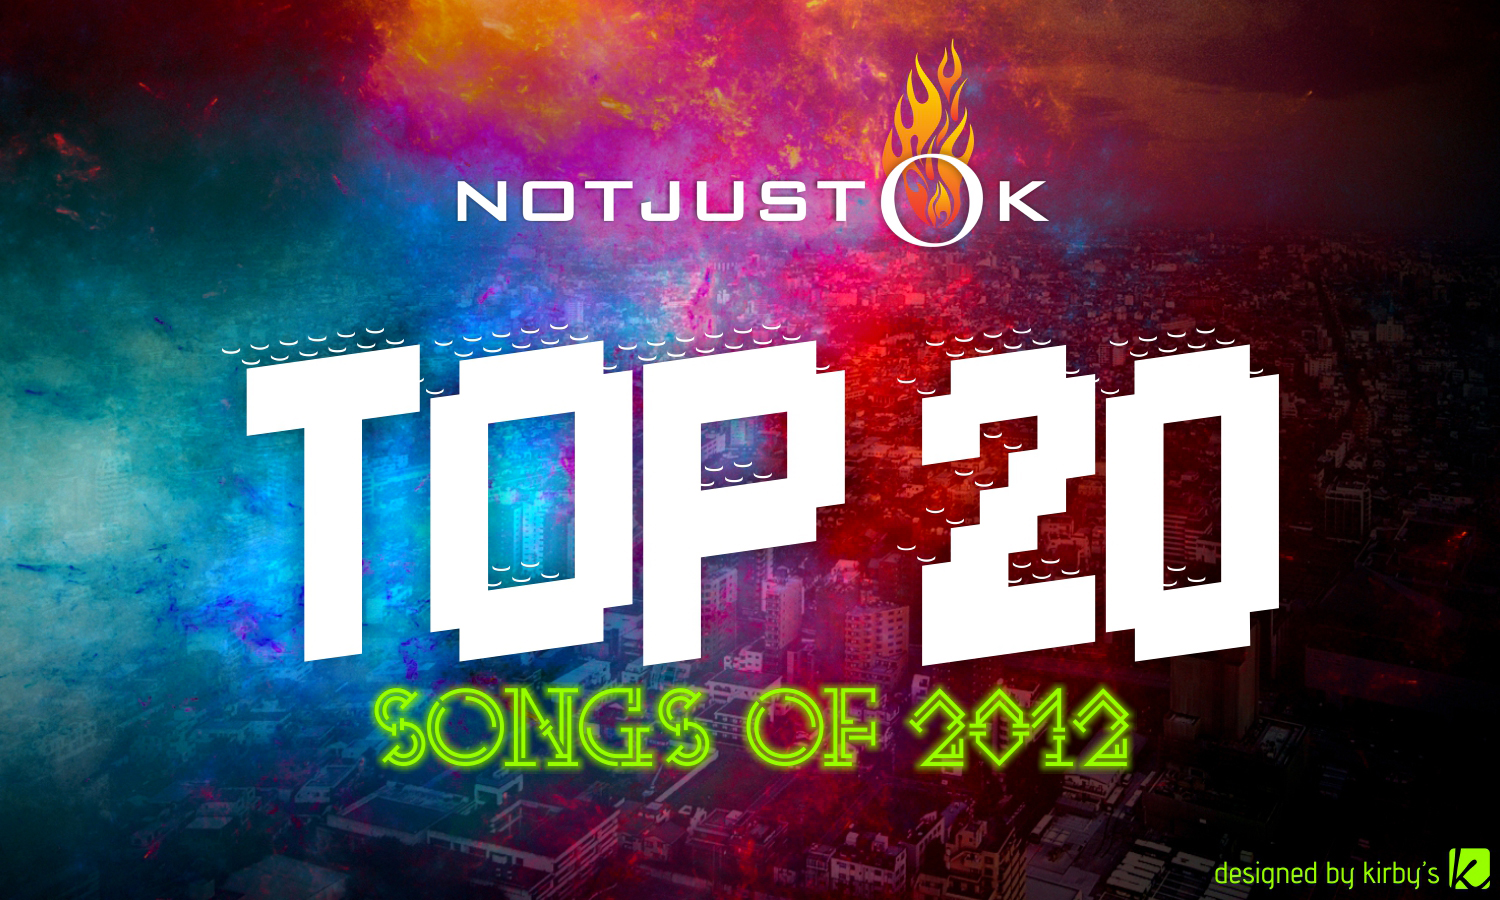 top20 songs 2012